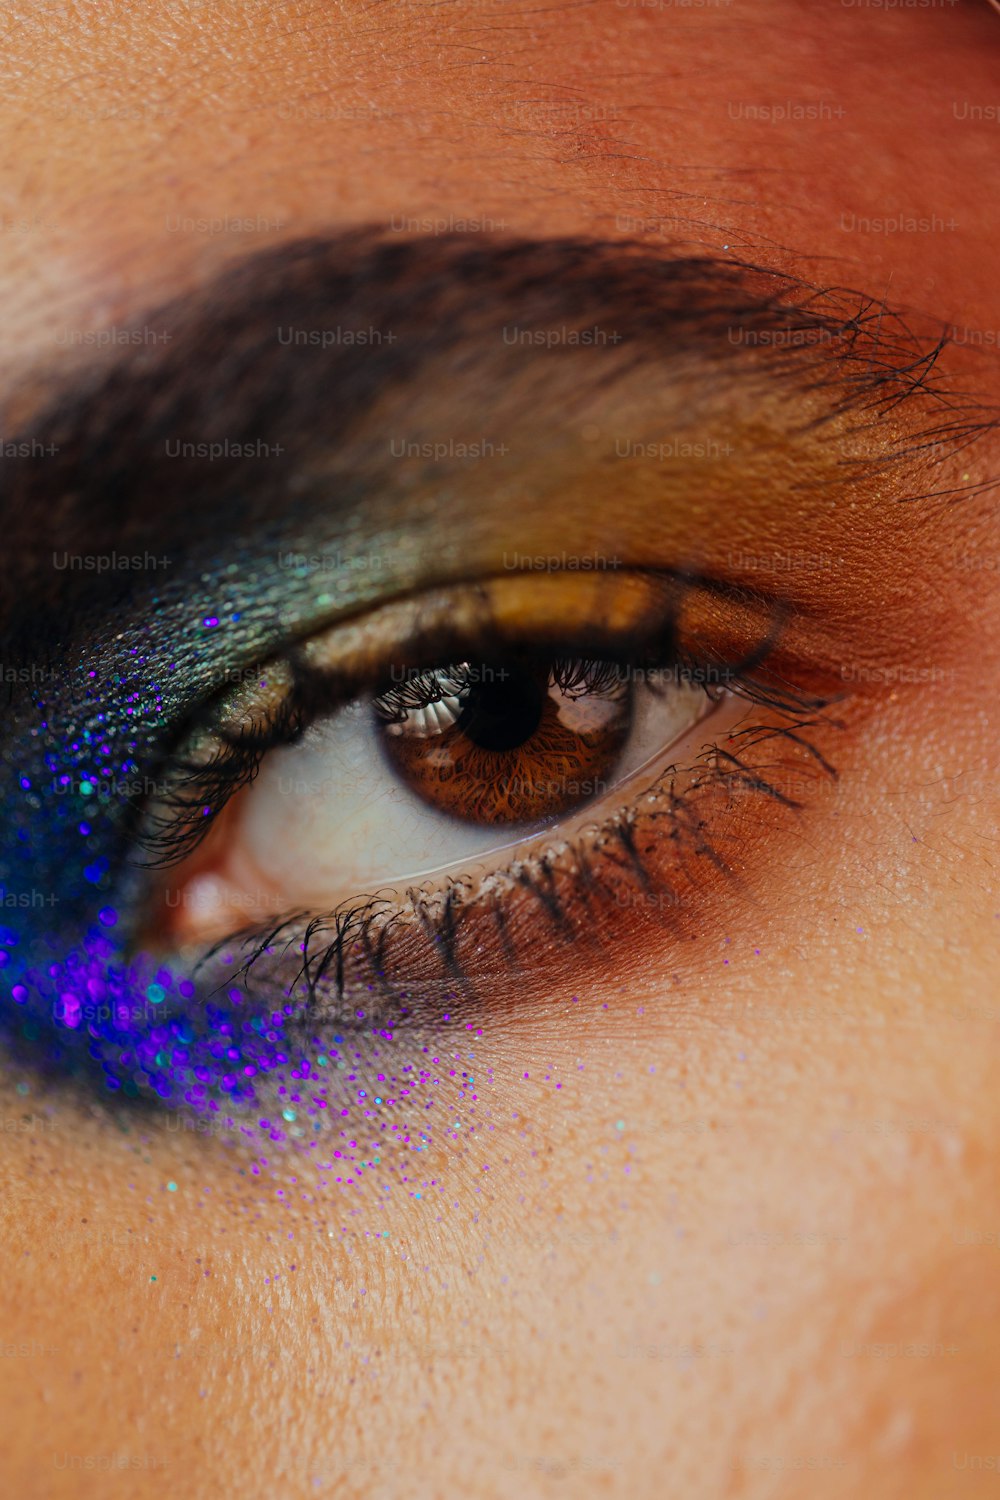 Un primer plano del ojo de una persona con una sombra de ojos azul y púrpura